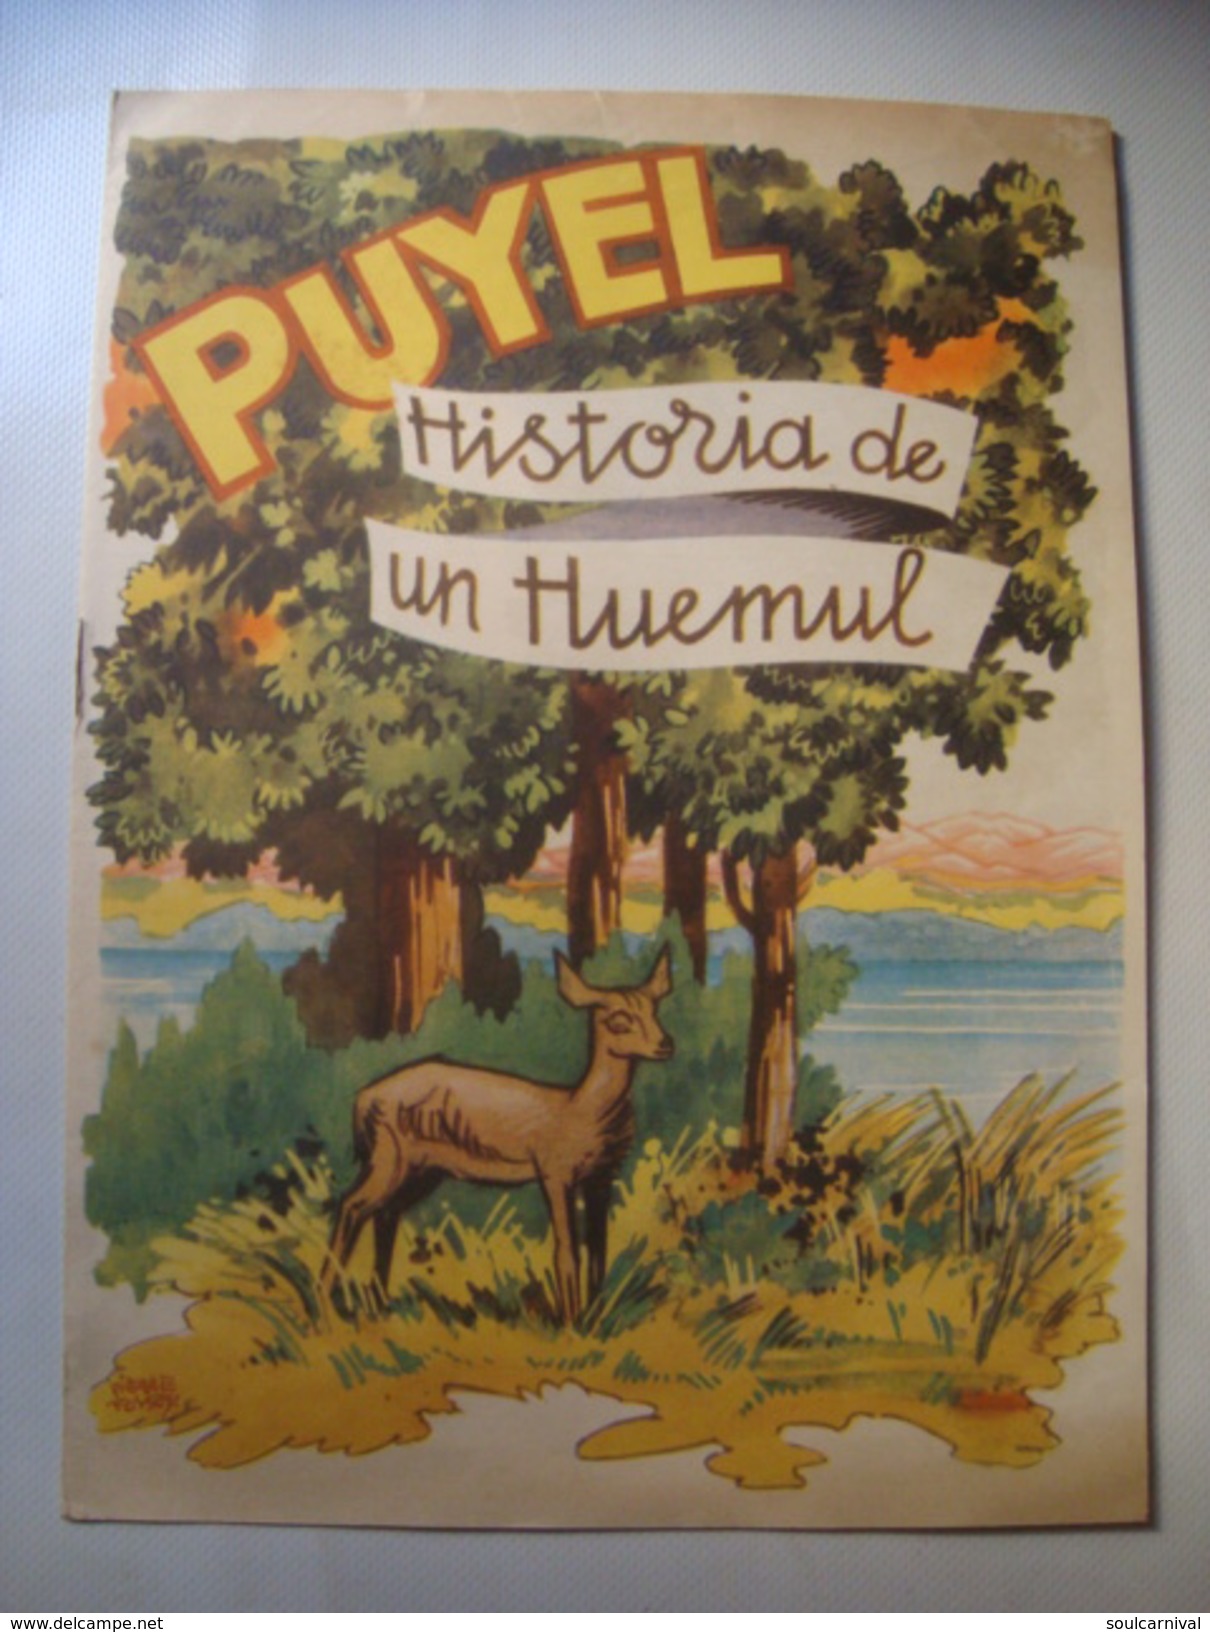 PUYEL. HISTORIA DE UN HUEMUL - ARGENTINA, DIRECCION DE TURISMO Y PARQUES, 1950 APROX. BY PIERRE FOSSEY. - Kinder- Und Jugendbücher